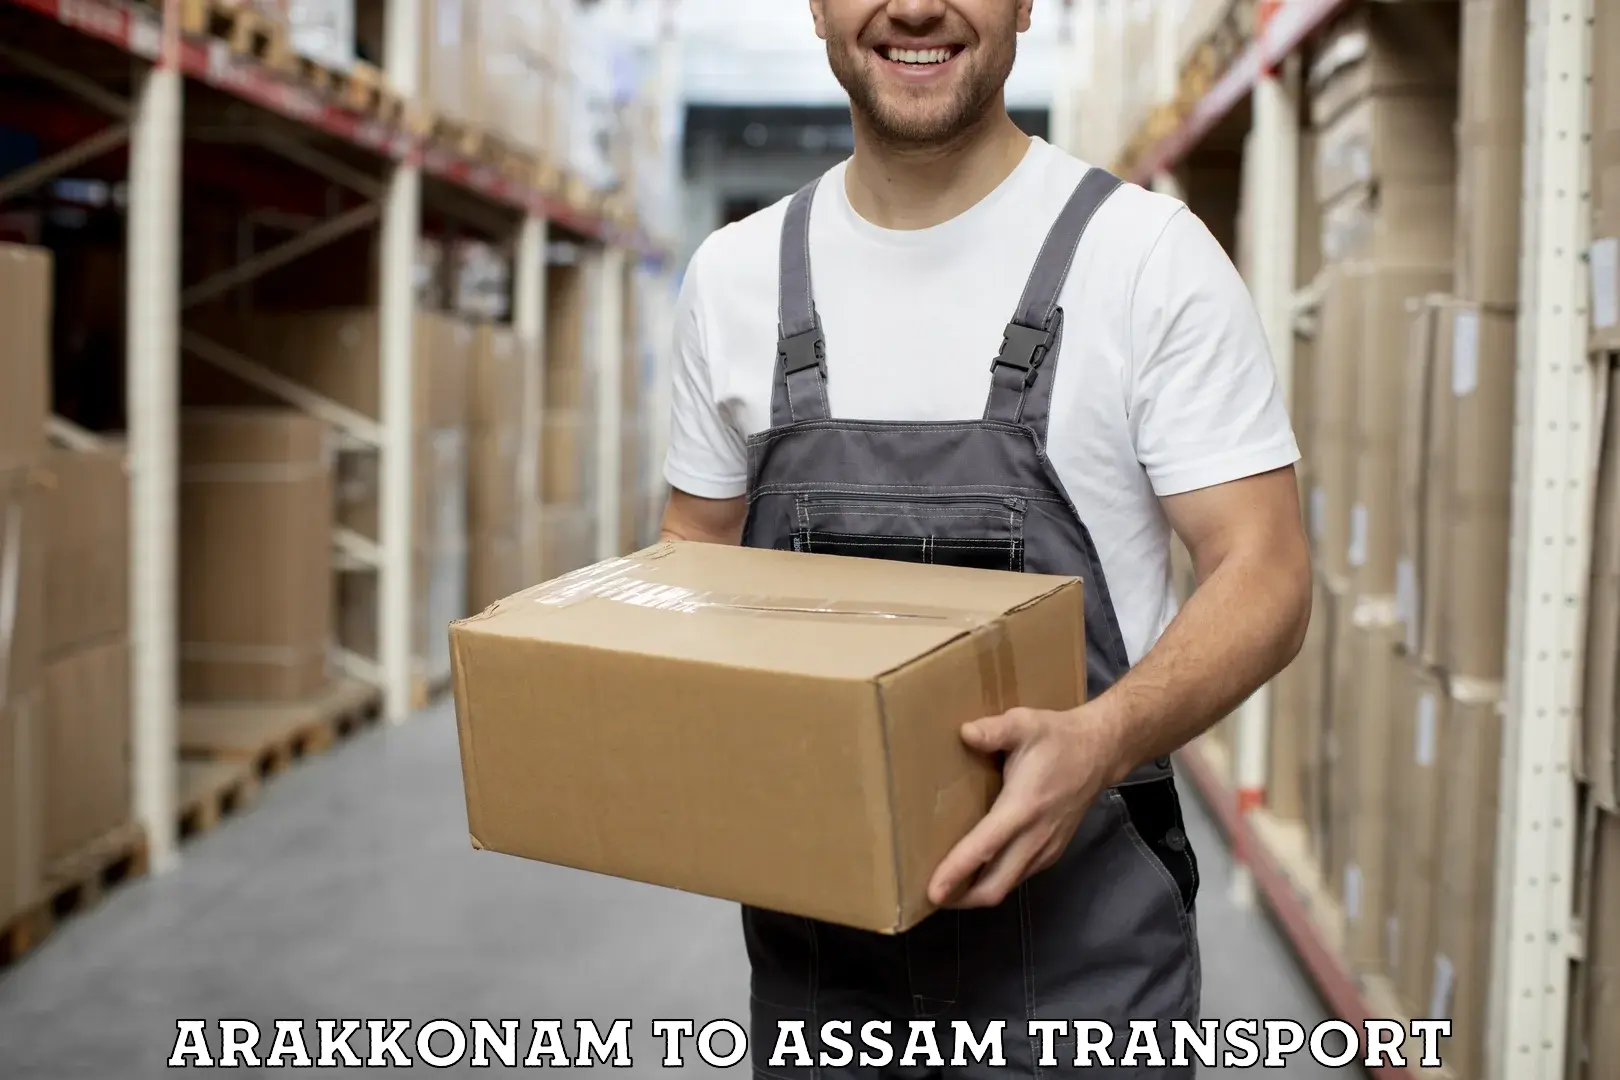 Truck transport companies in India Arakkonam to Ramkrishna Nagar Karimganj